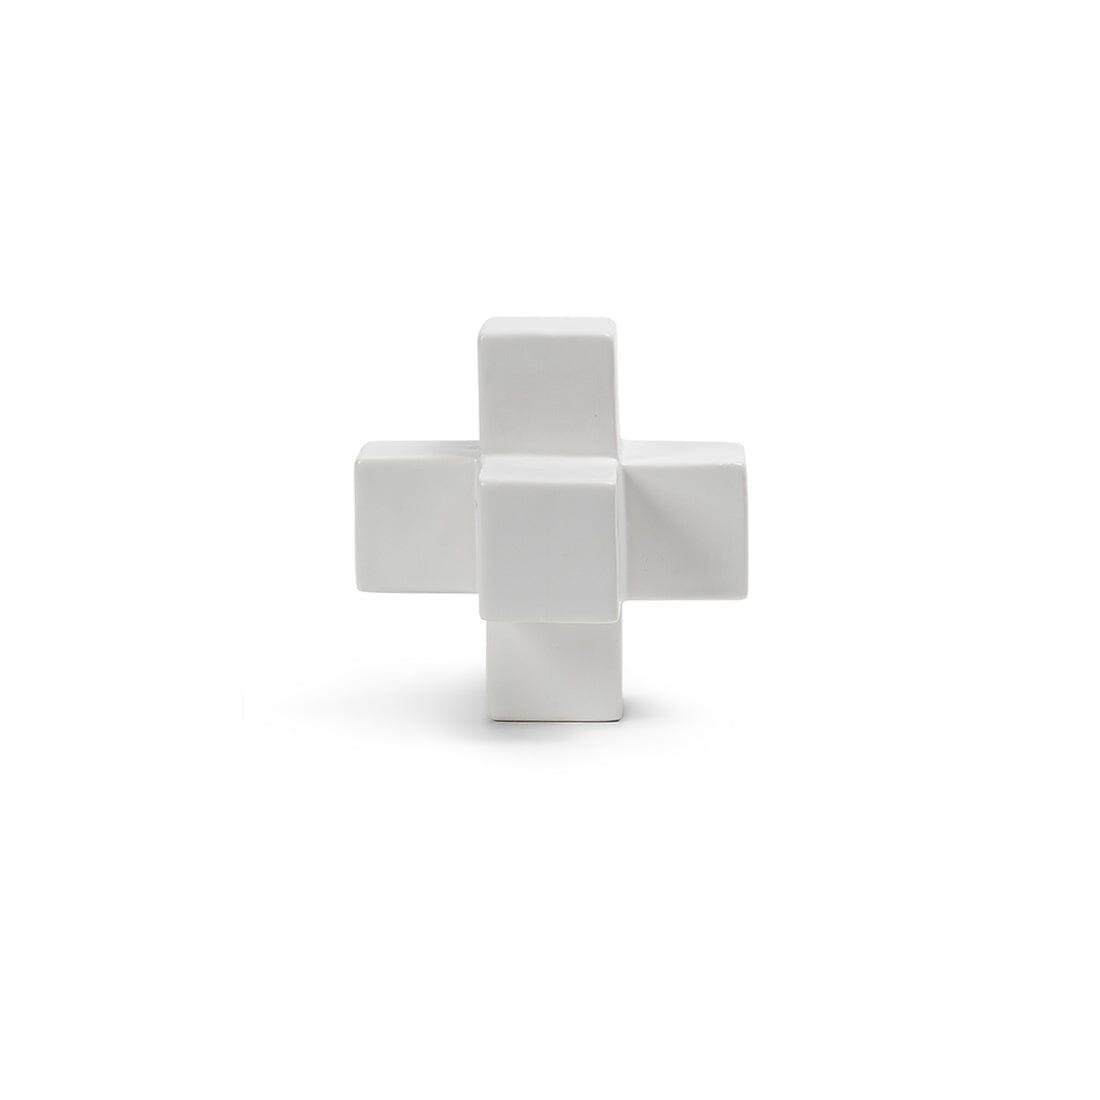 White decorative cross ornament